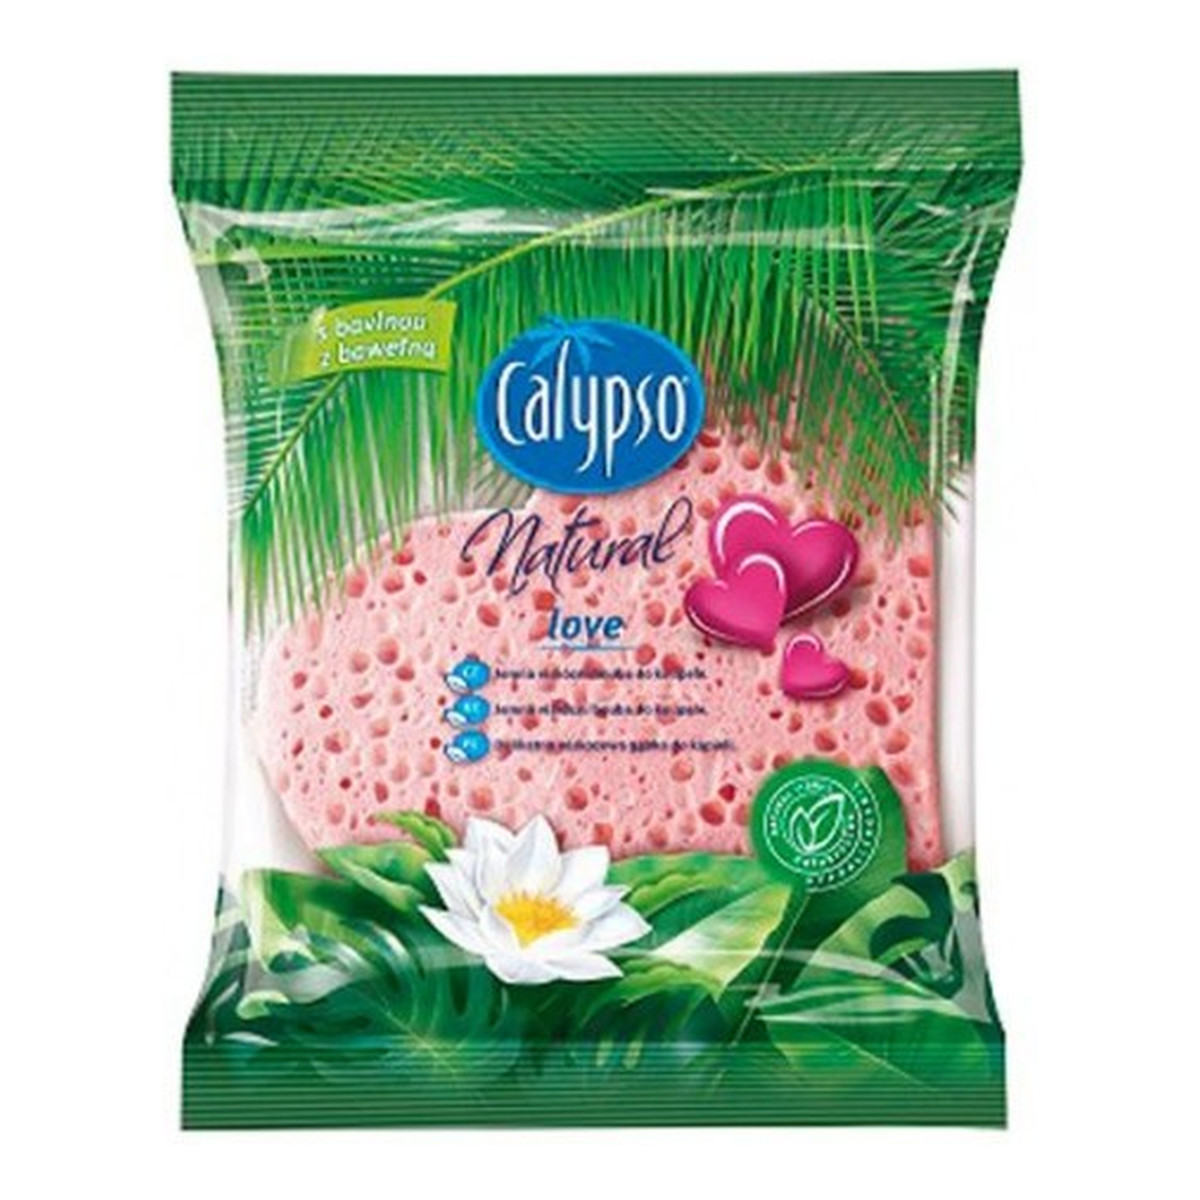 Calypso Natural Love Delikatna Gąbka Celulozowa Do Pielęgnacji Ciała